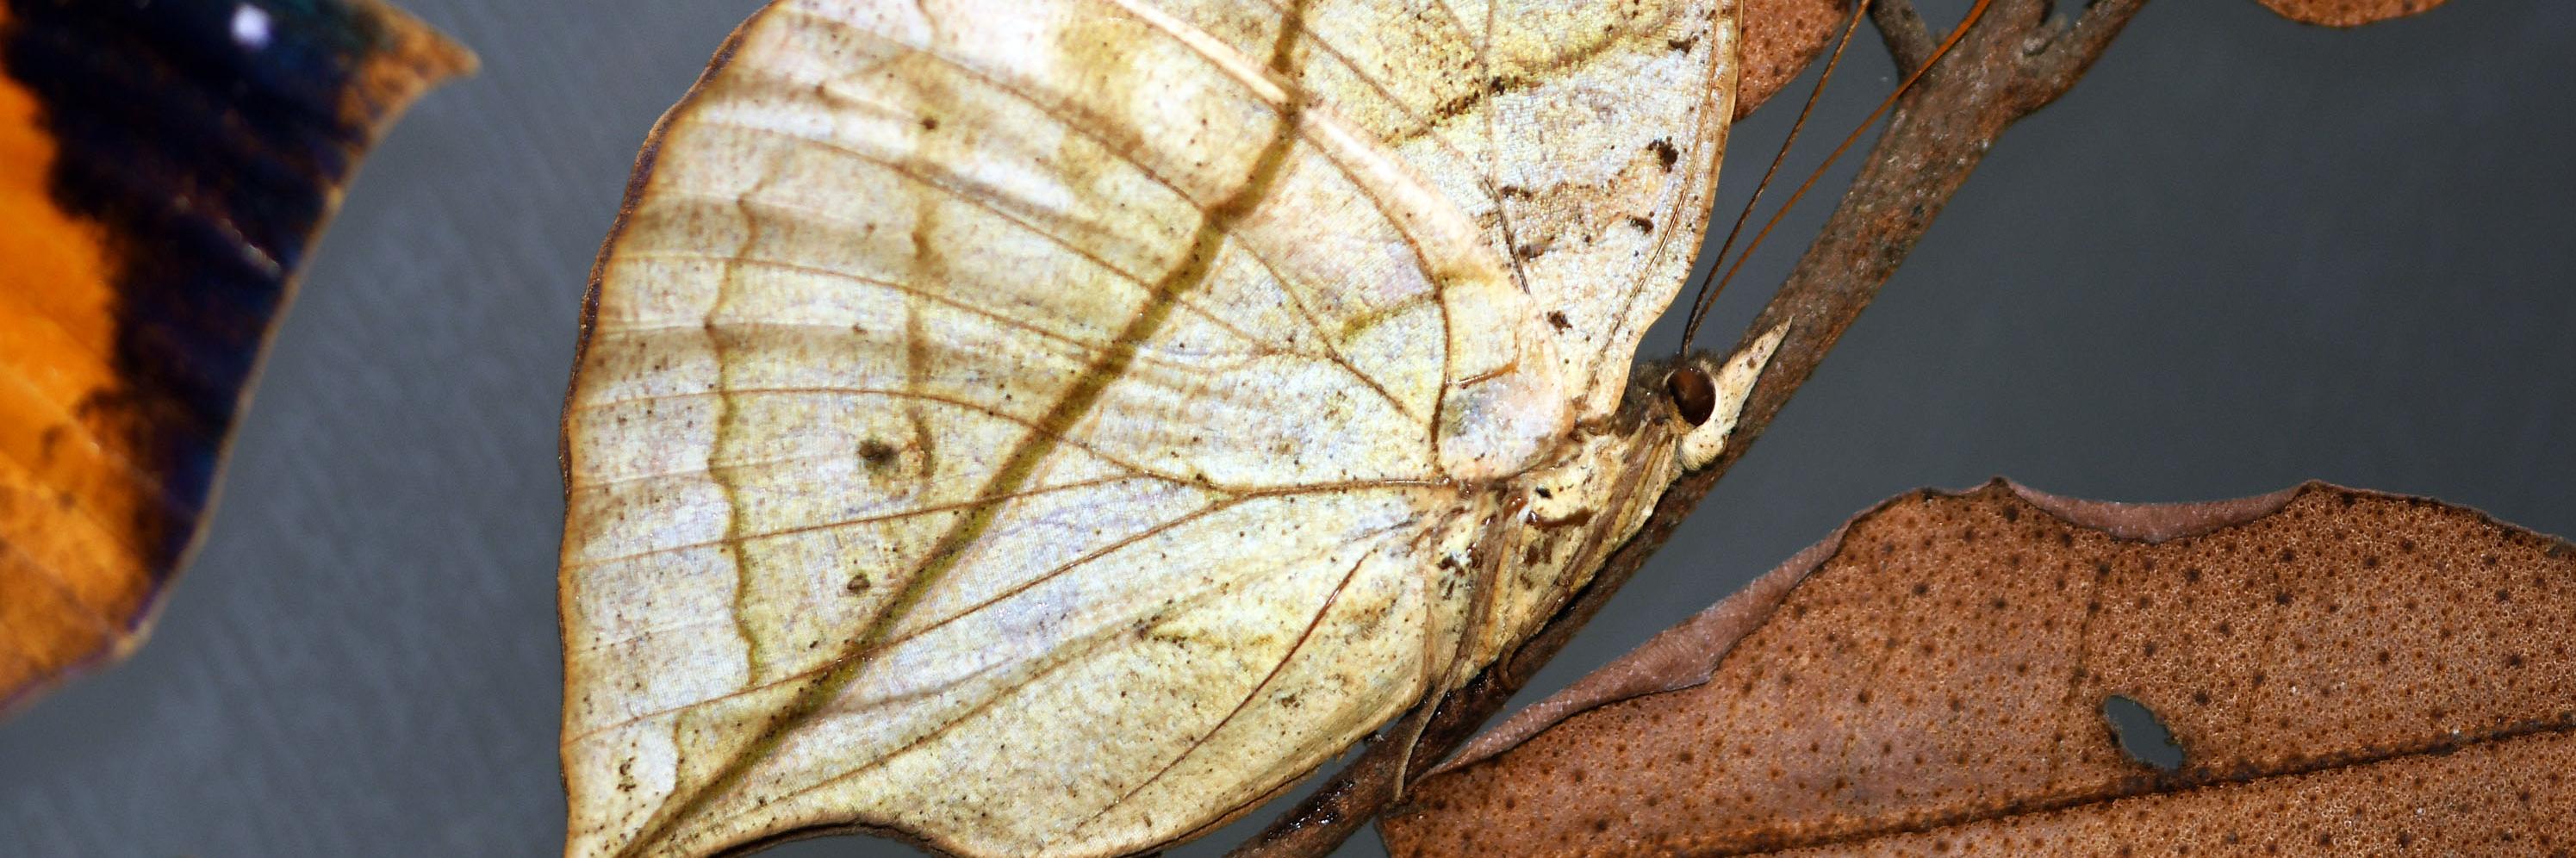 Ejemplar de Kallima paralekta, de la antigua exposición “Los Insectos desde la Alborada” del MNHN, año 2000.